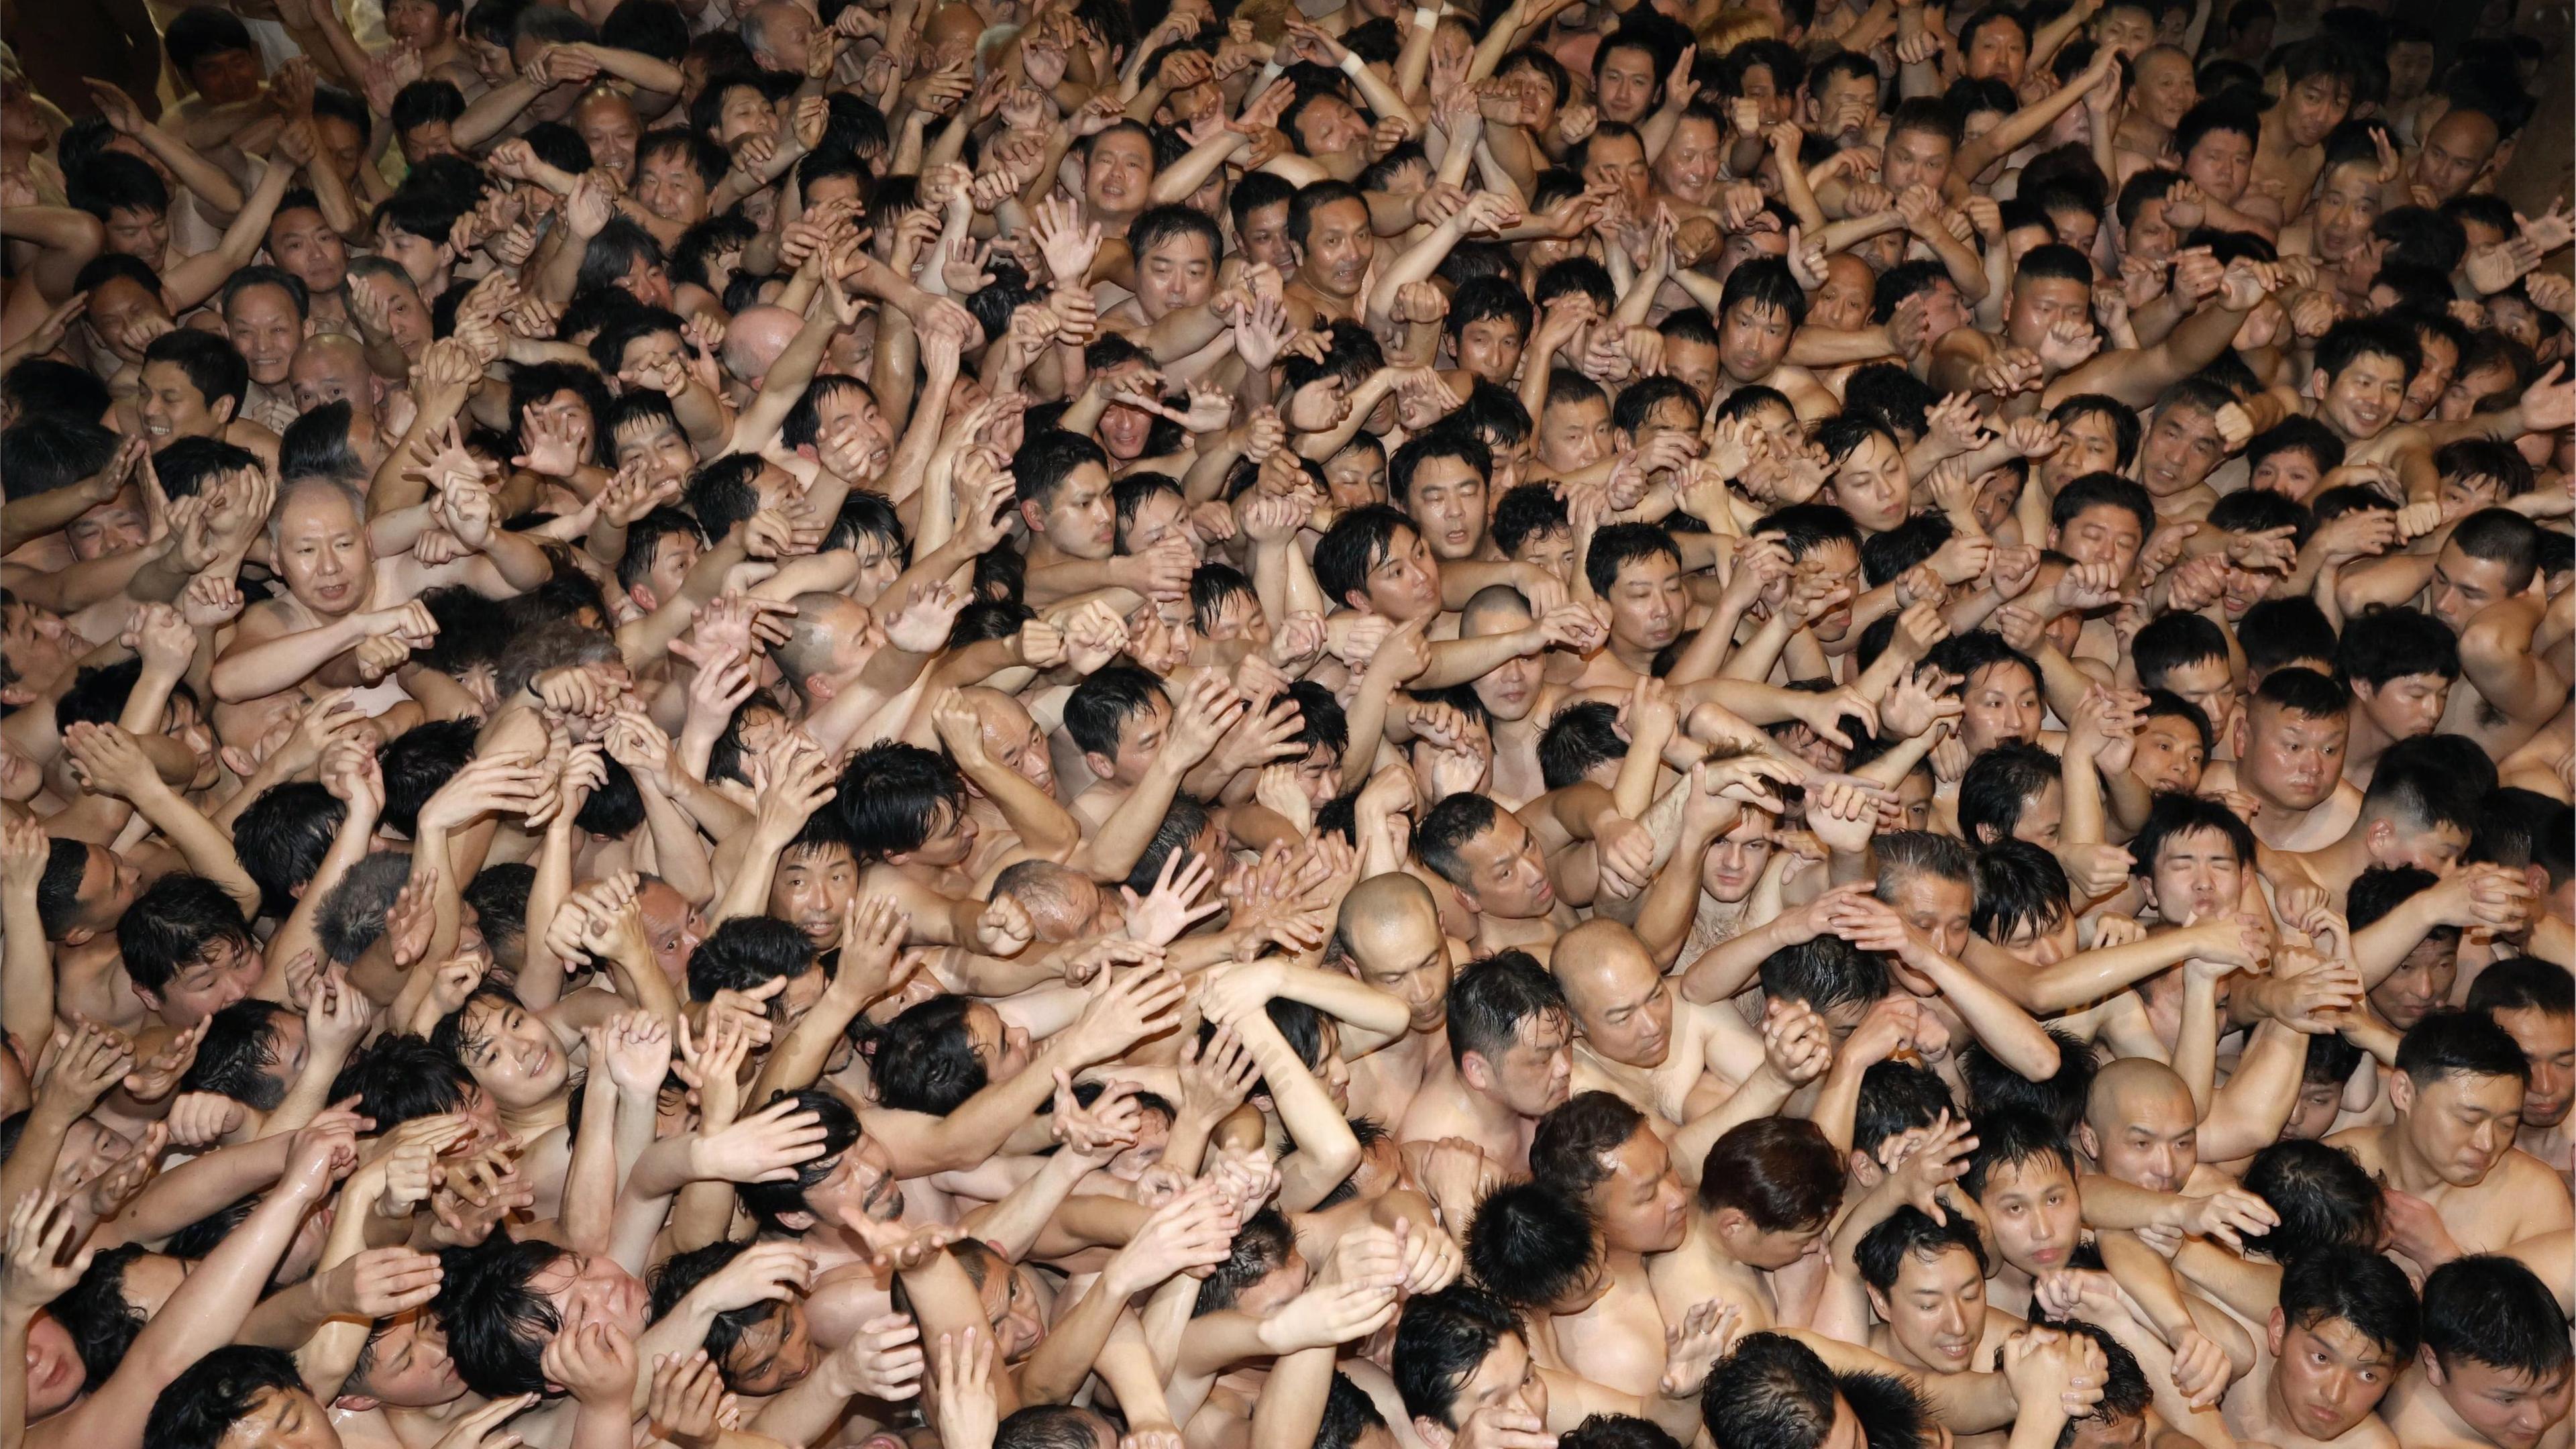 Männer, die nur mit einem Lendenschurz bekleidet sind, drängeln sich bei dem über 500 Jahre alten Saidaiji-Eyo-Festival im Saidaiji-Tempel, um einen heiligen Holzstab zu ergattern. Derjenige, der einen Stock bekommt, wird «fukuotoko» (dt. Glückspilz). Das «Naked Man Festival» am 17.02.2024 soll aufgrund des weiteren Bevölkerungsrückgangs die letzte Austragung gewesen sein.